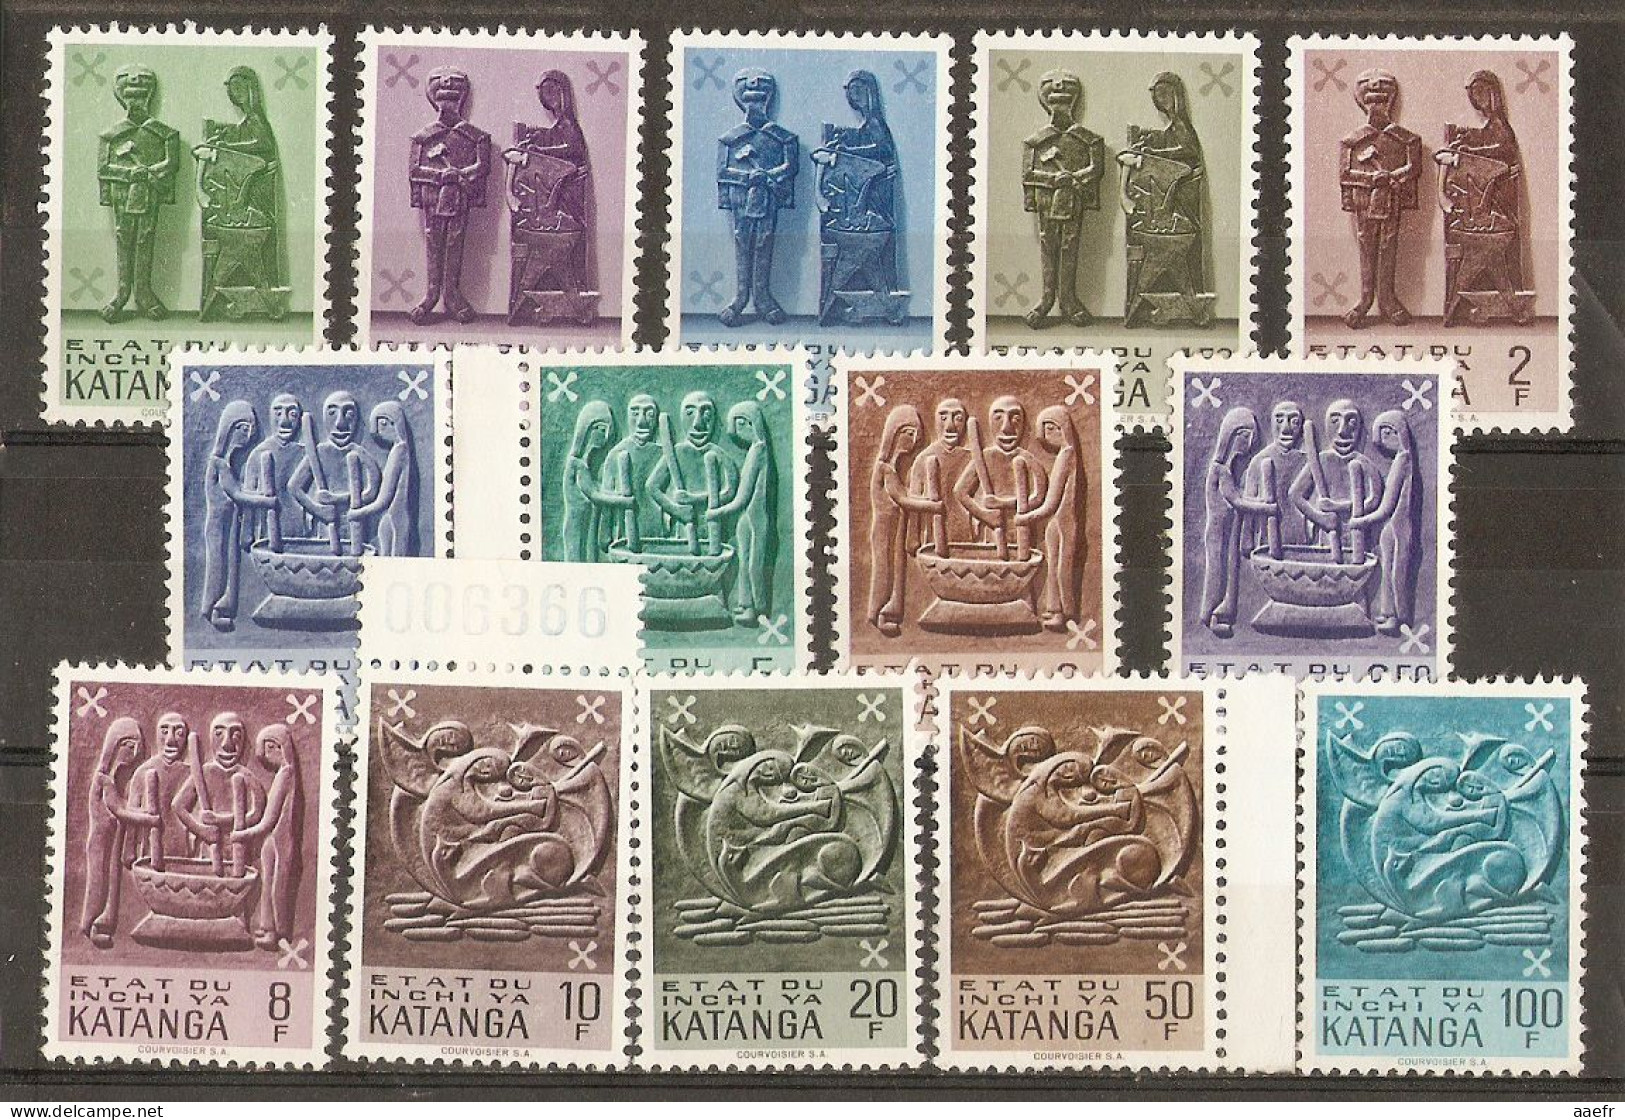 Katanga 1961 - Arts Katangais - Série Complète MNH - Cob 52/65 - Katanga